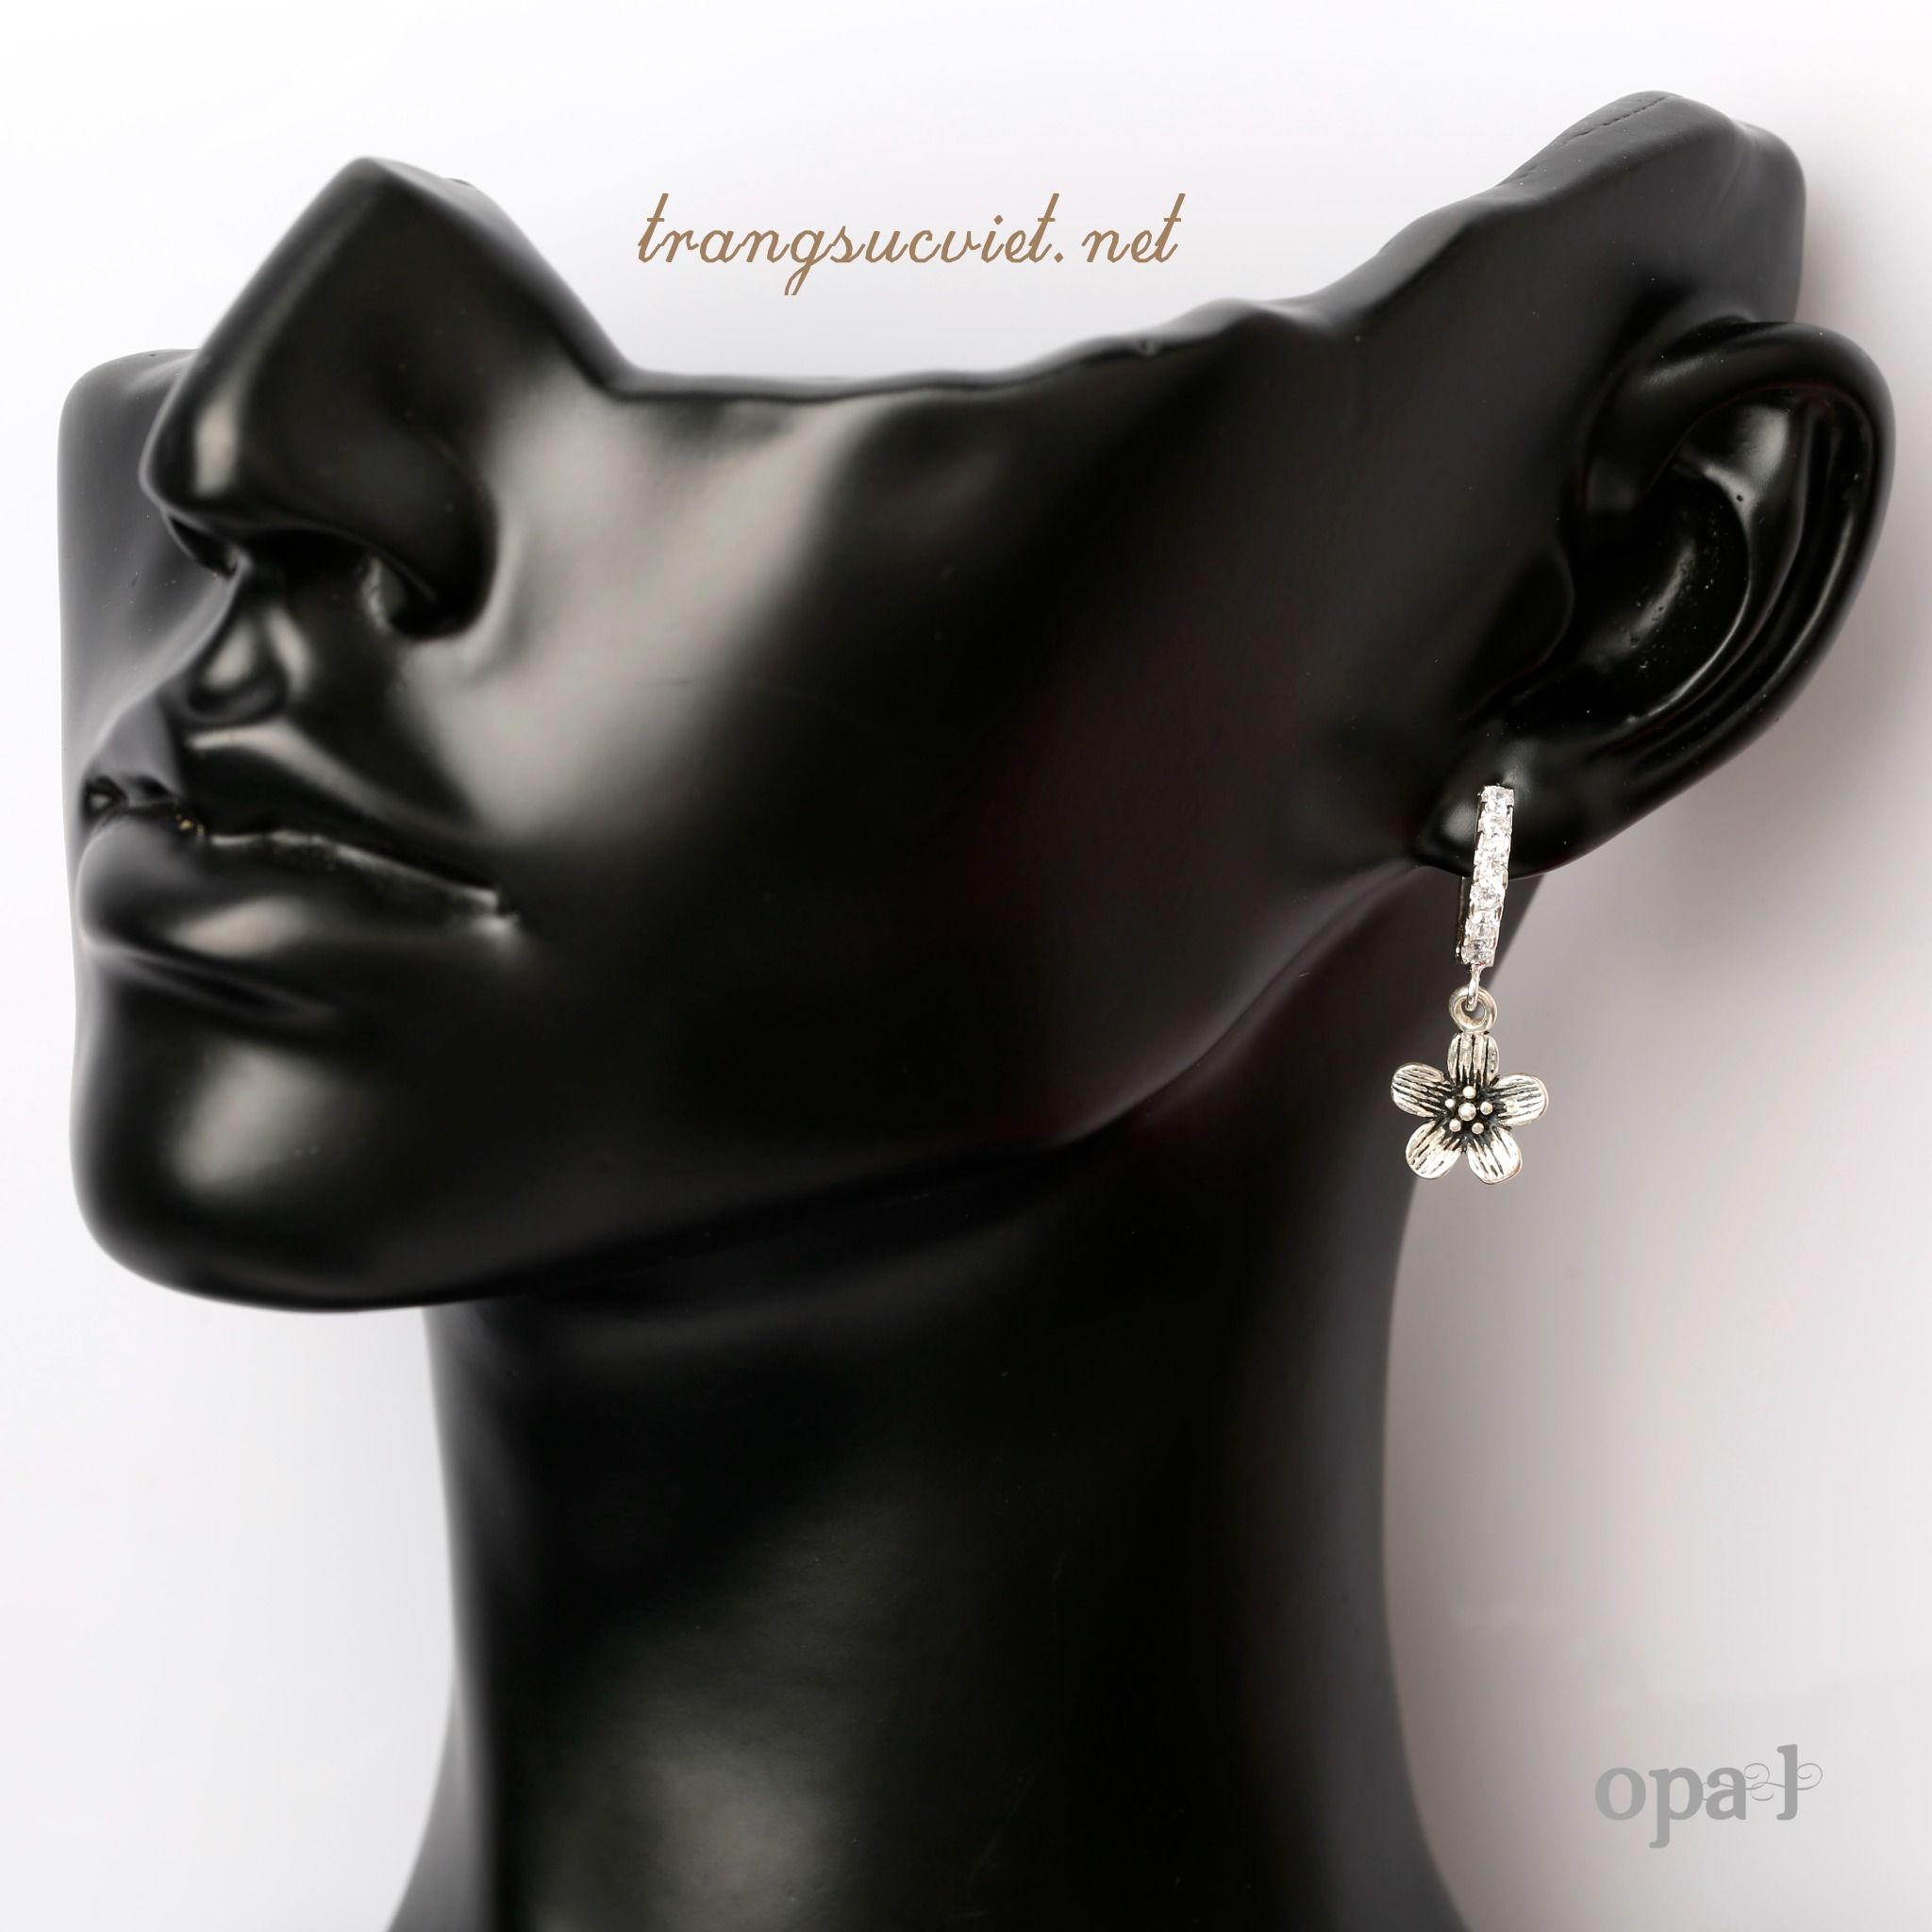  Bộ ngọc trai ánh đen mang phong cách đẳng cấp thiết kế phiên bản giới hạn, thương hiệu Opal. 